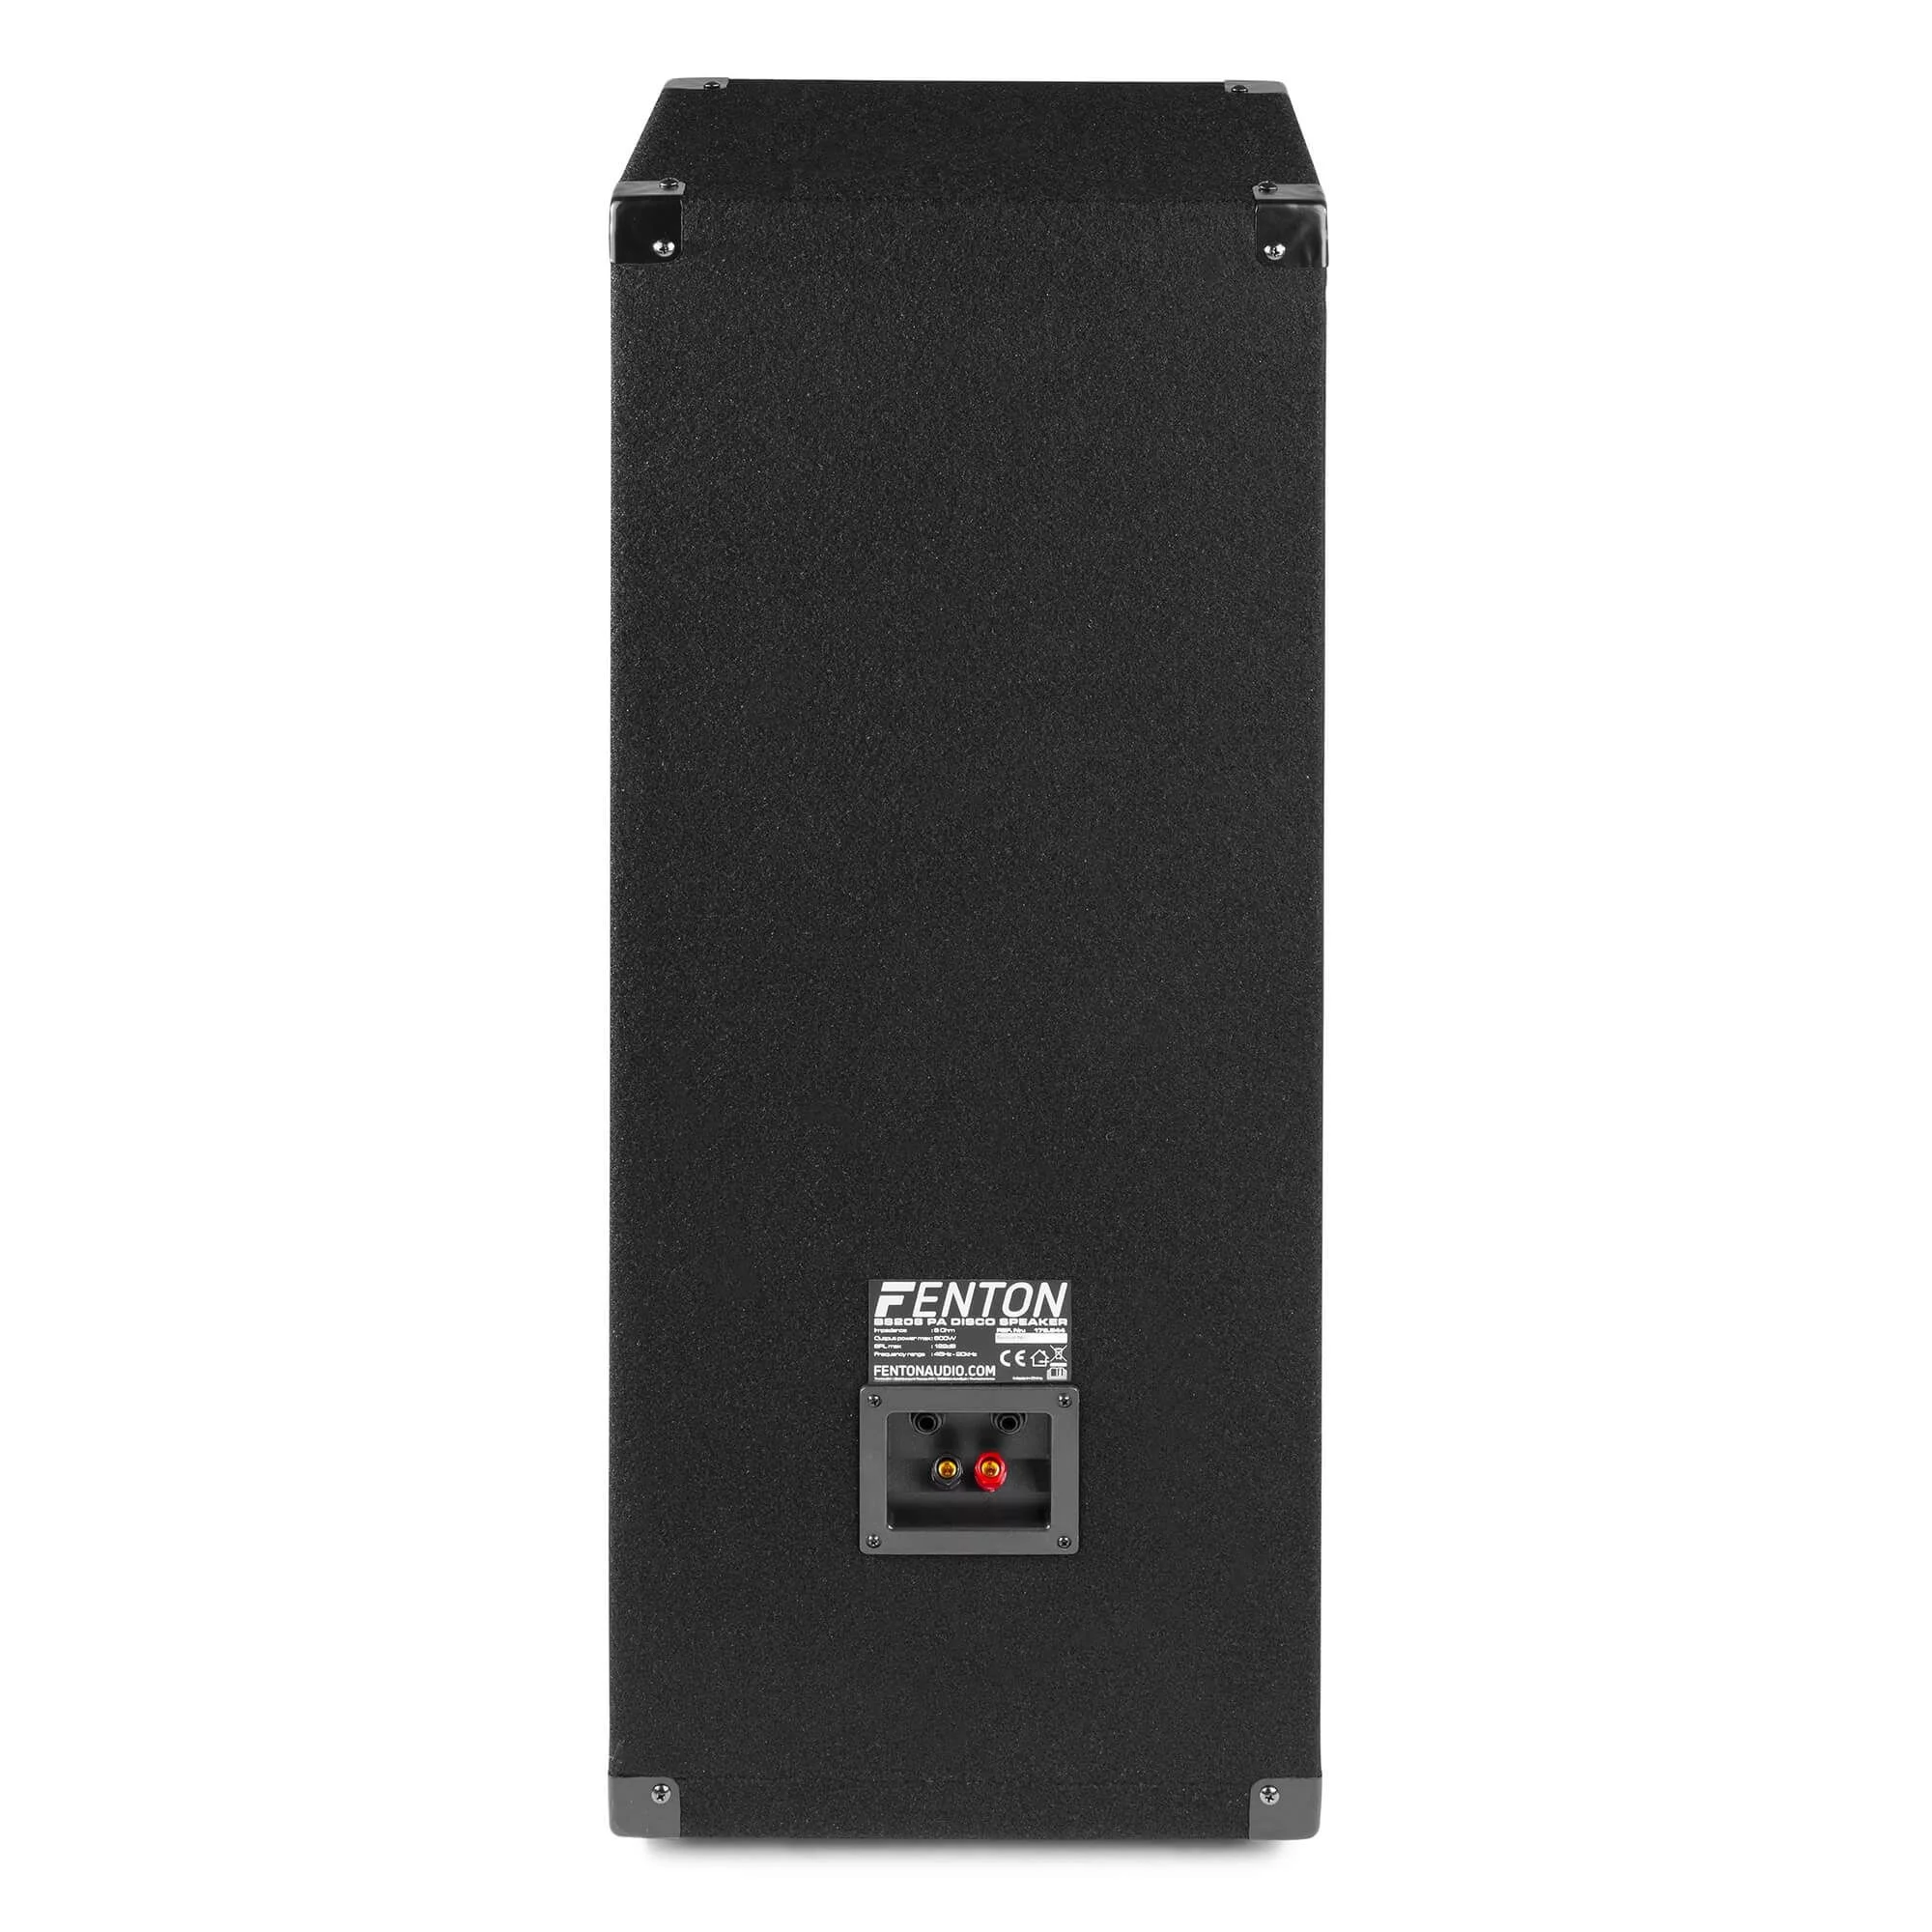 Fenton bs208 disco speaker 2x 8 met ledaposs 600w 5